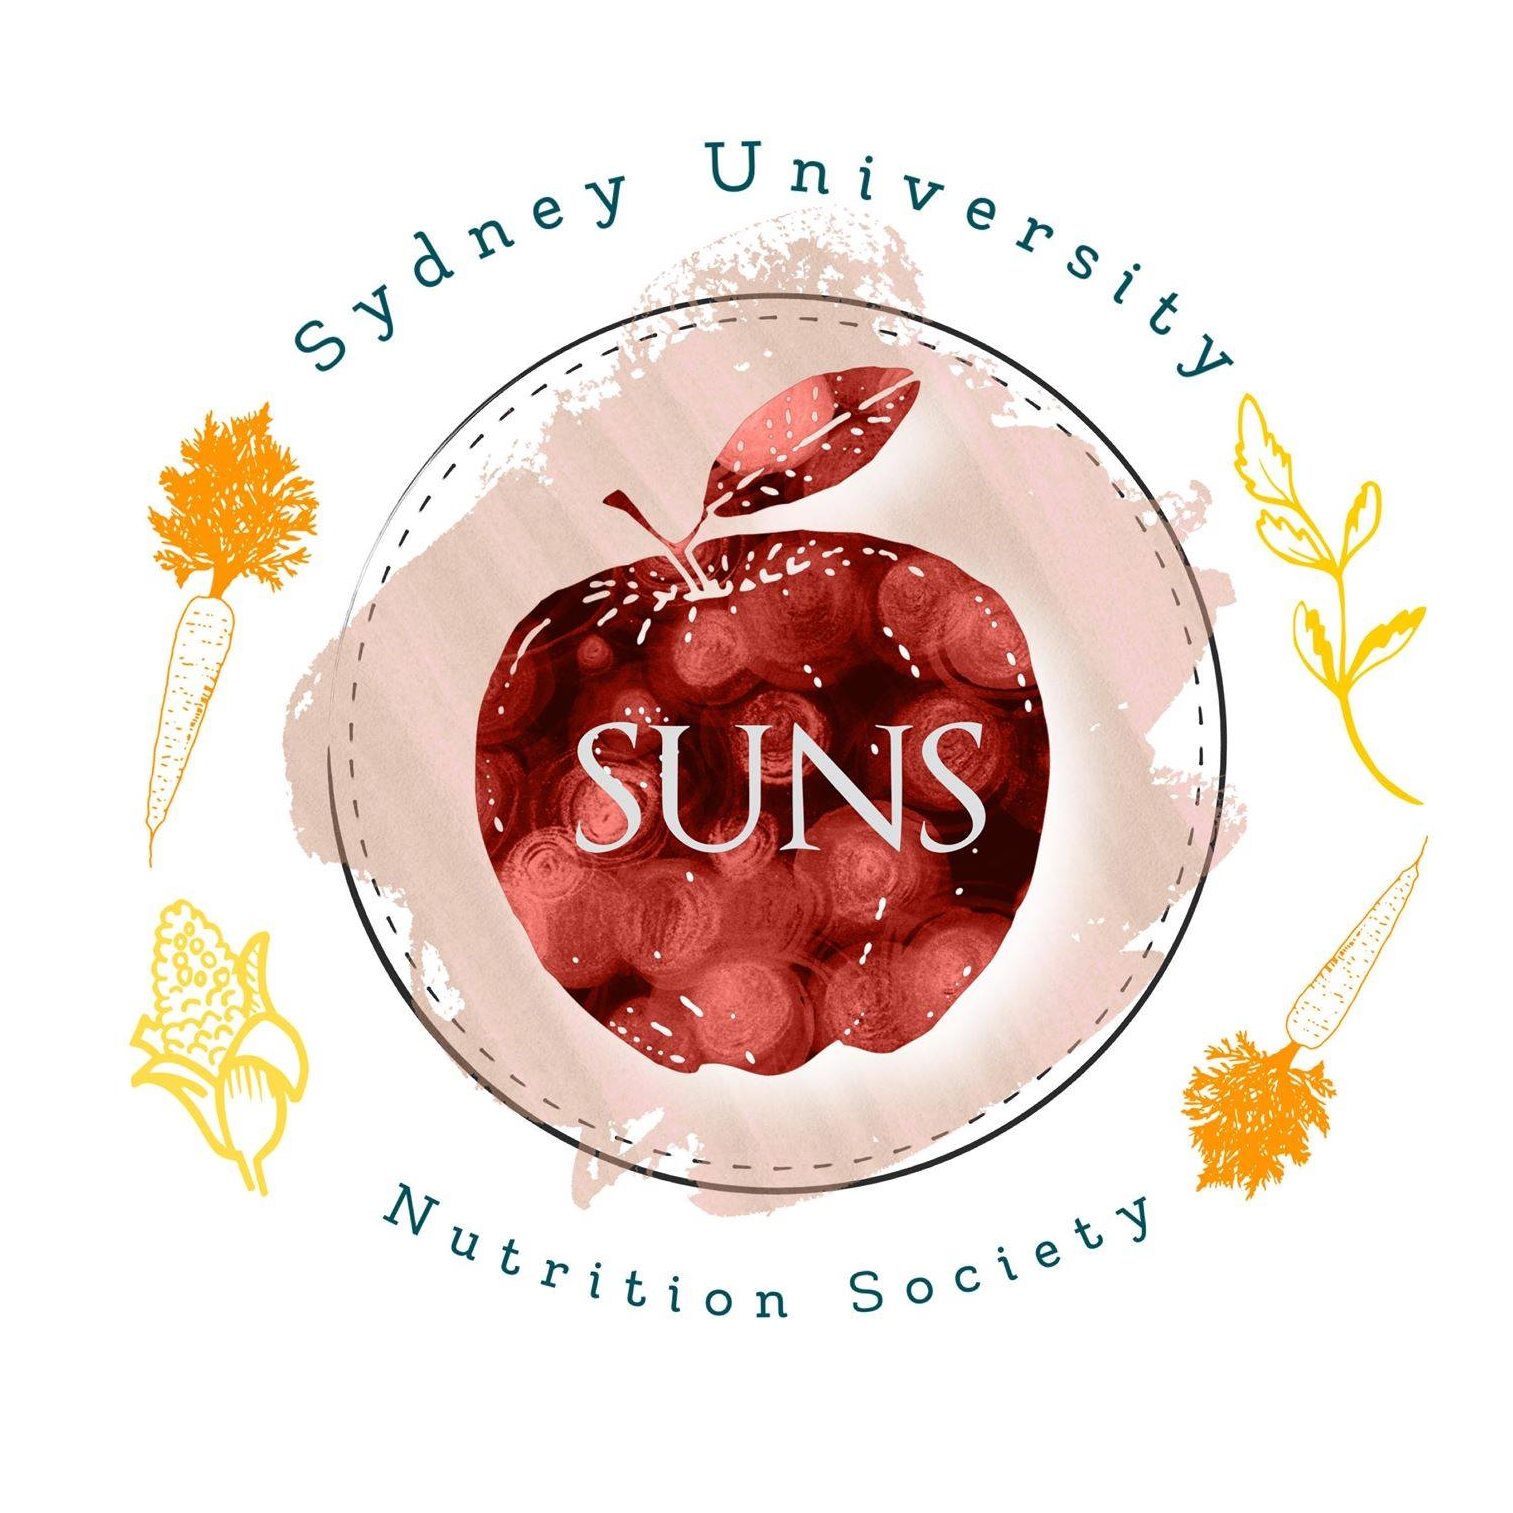 Sydney University Nutrition Society